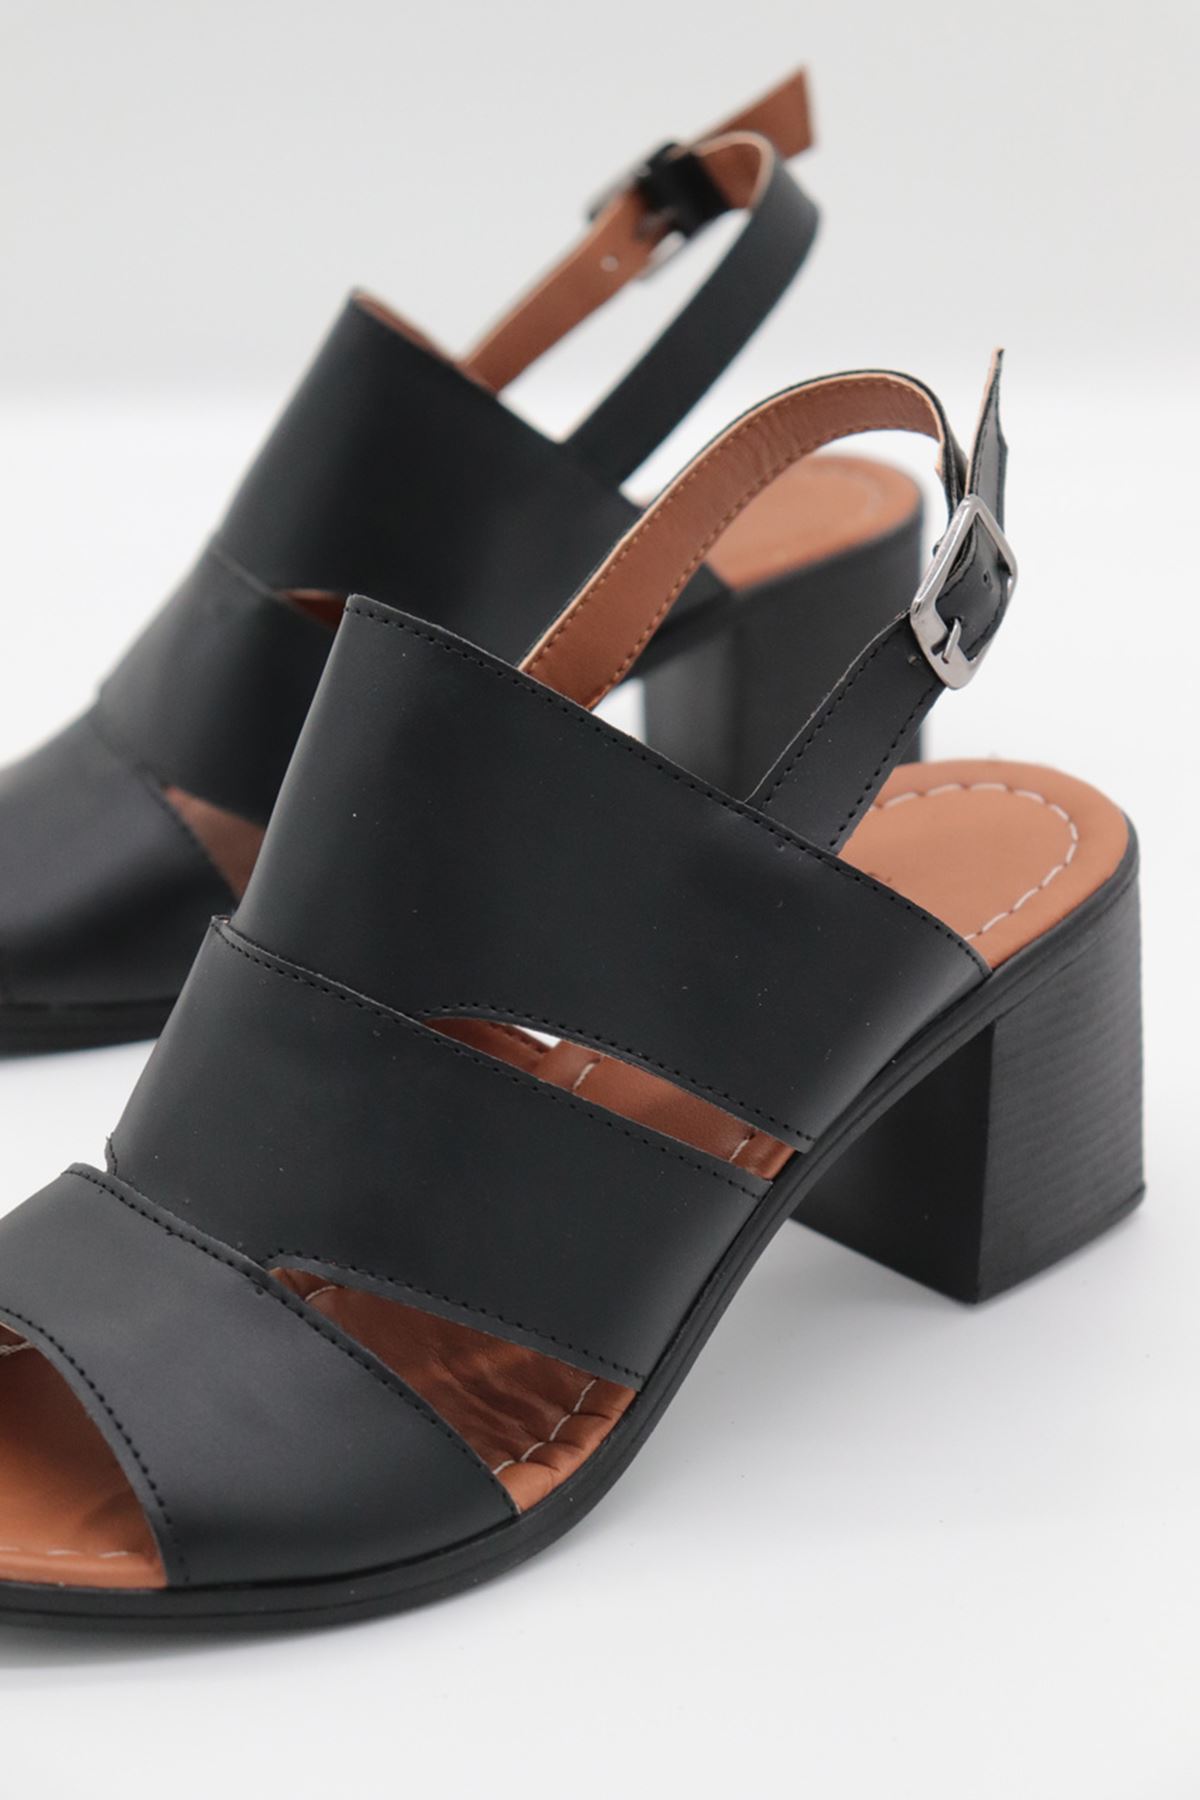 Trendayakkabı - Siyah  Kafes Topuklu  Kadın Ayakkabı 